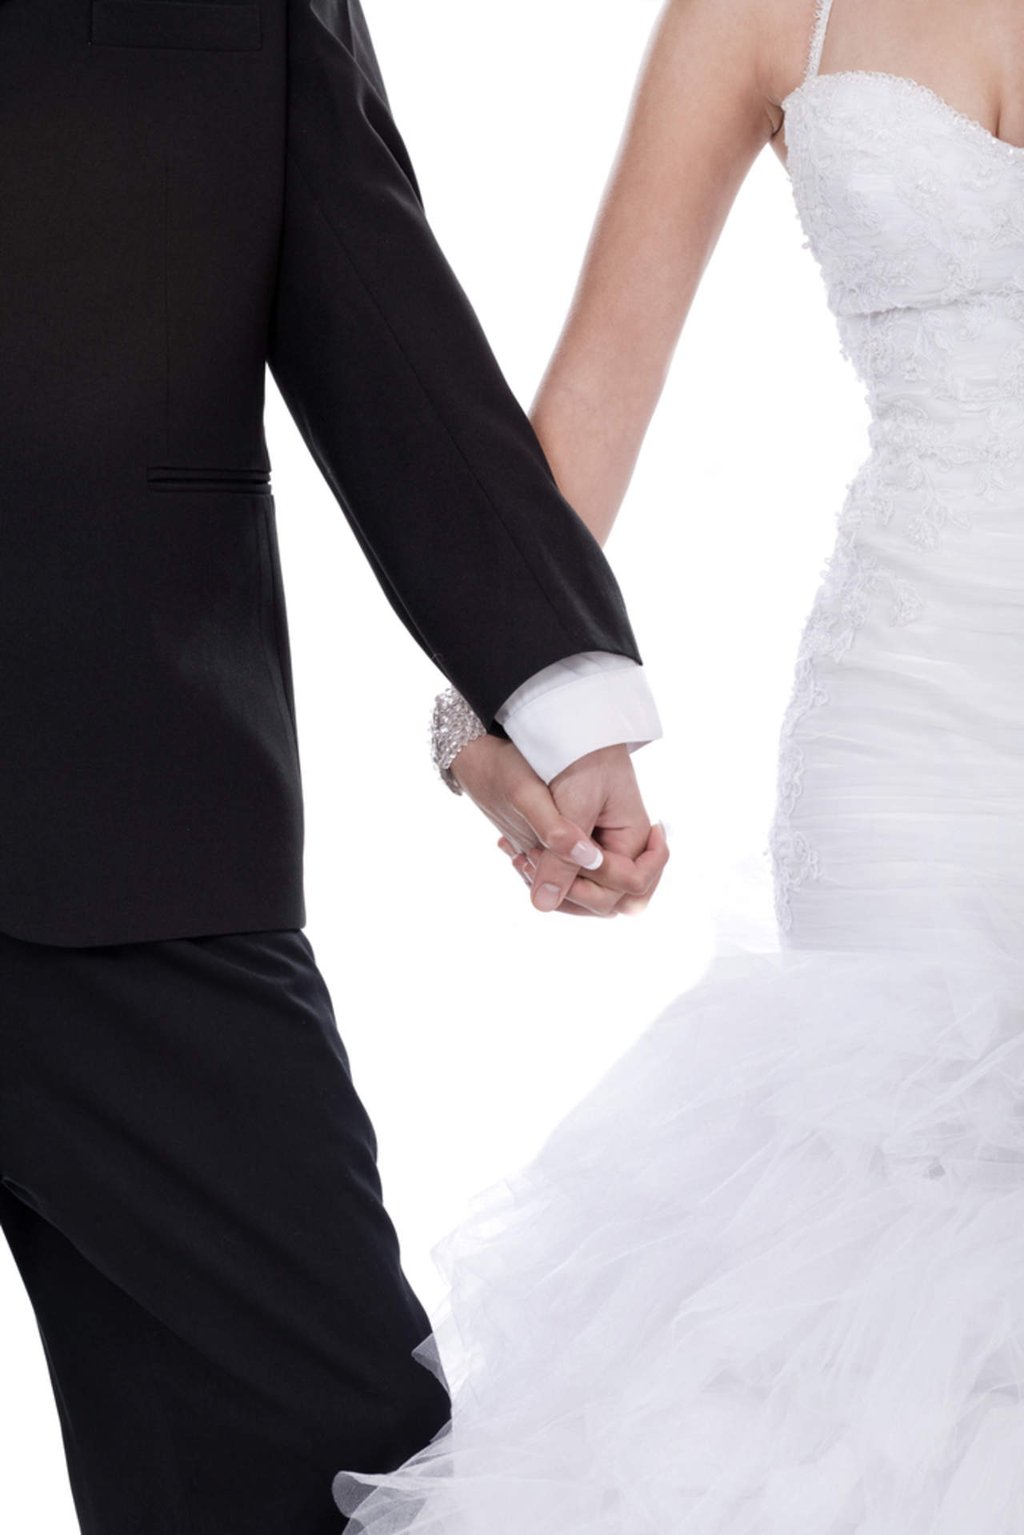 Matrimonio evitaría sufrir accidentes cardiovasculares